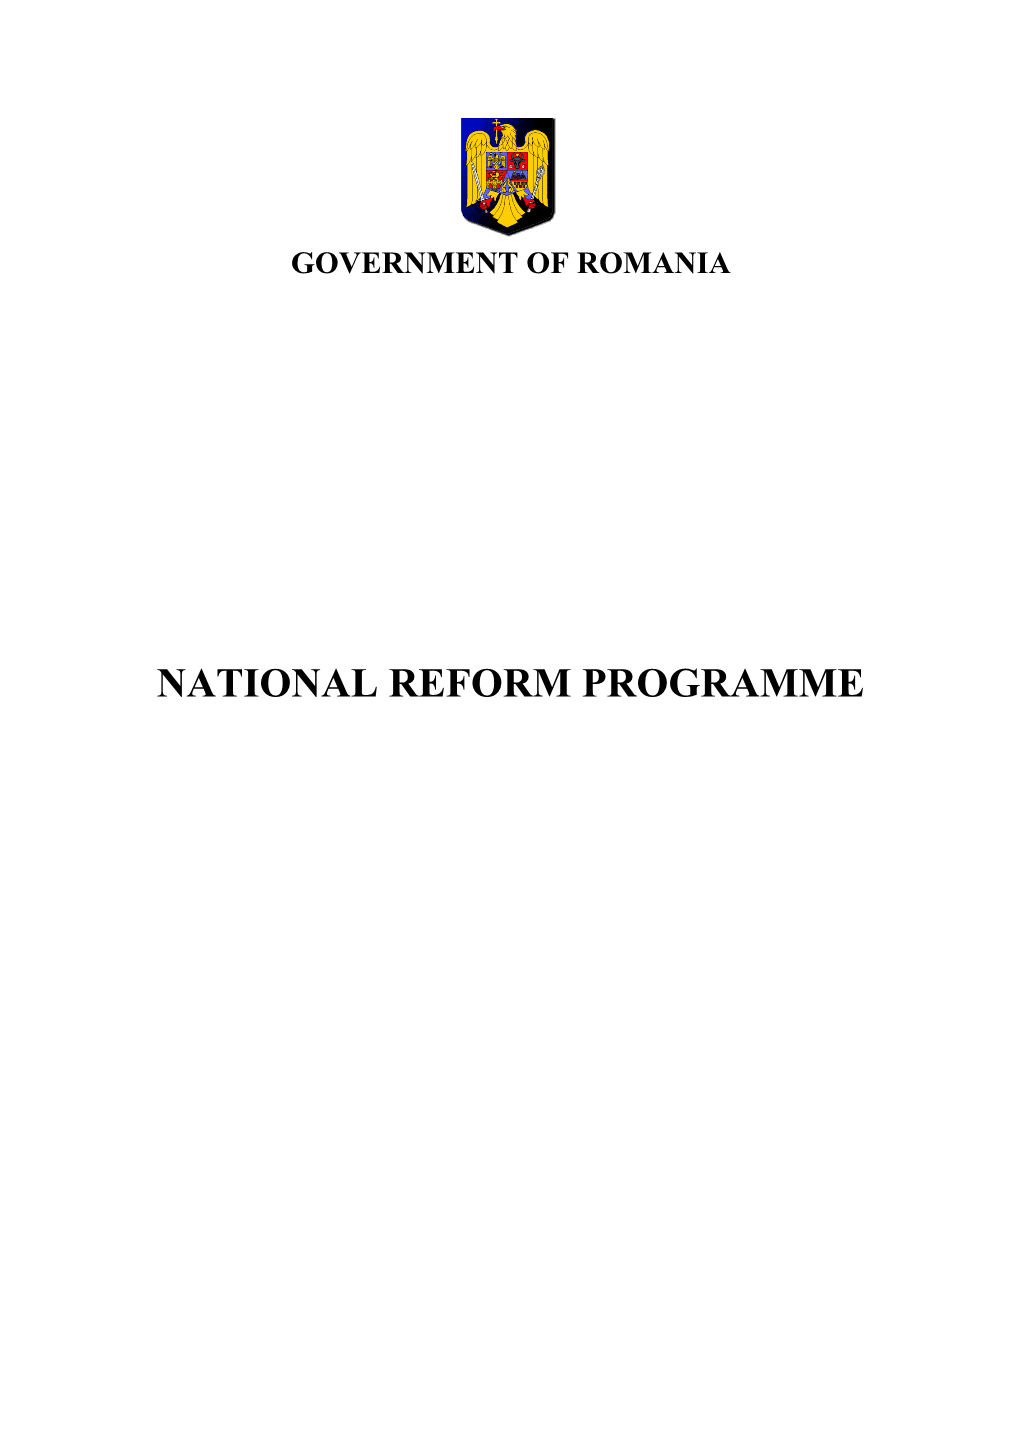 Government of Romania